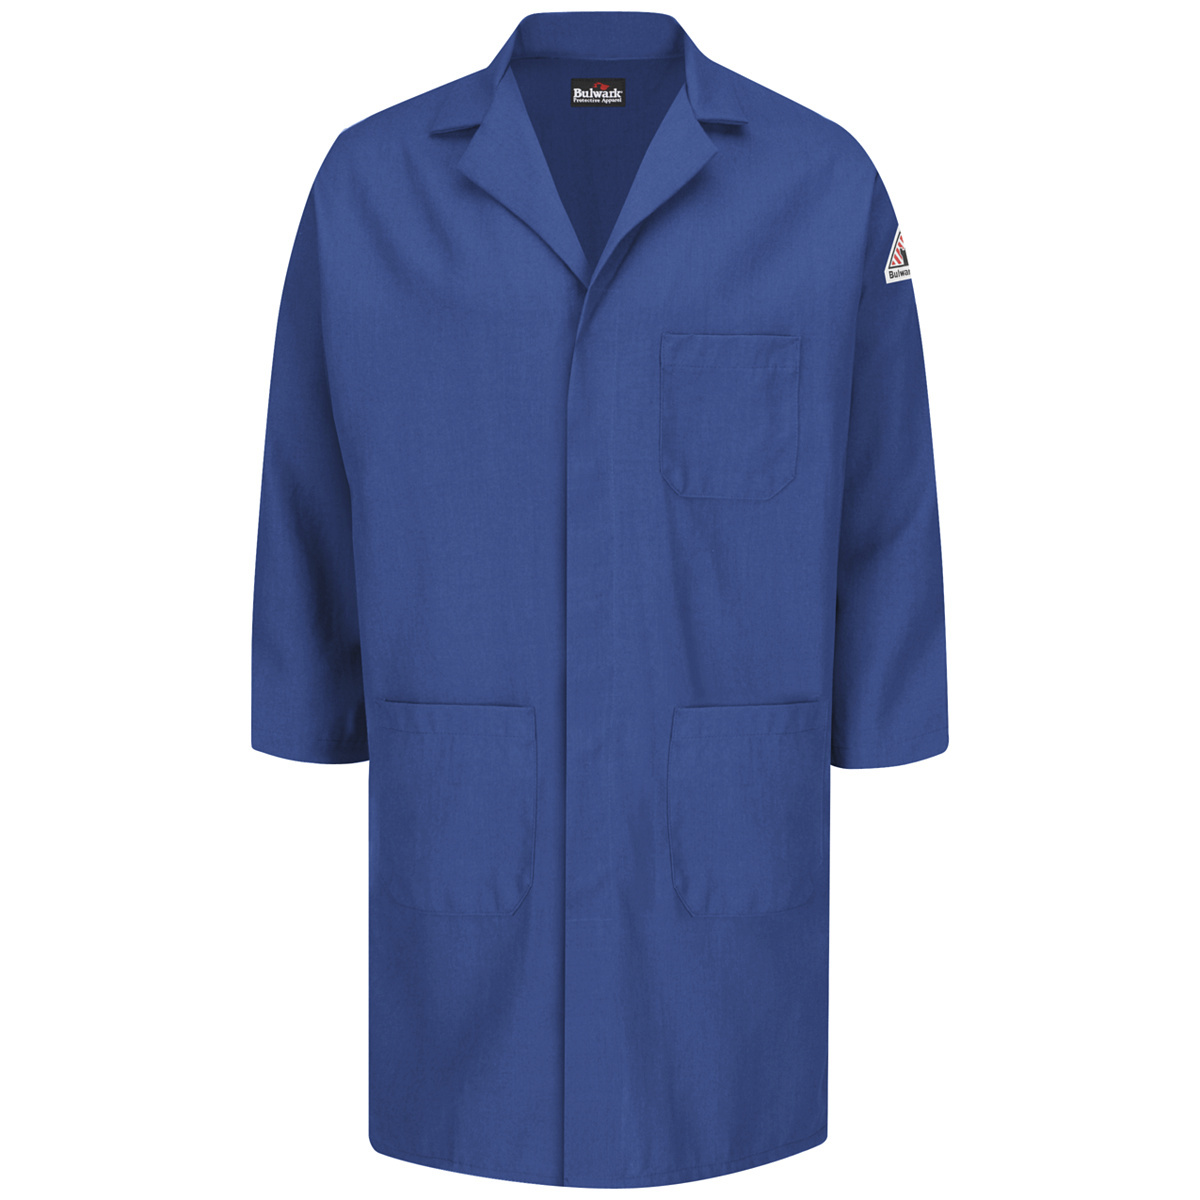 Bulwark® 3X Regular Royal Blue Nomex® IIIA/Nomex® Aramid/Kevlar® Aramid Flame Resistant Lab Coat With Snap Front Closure